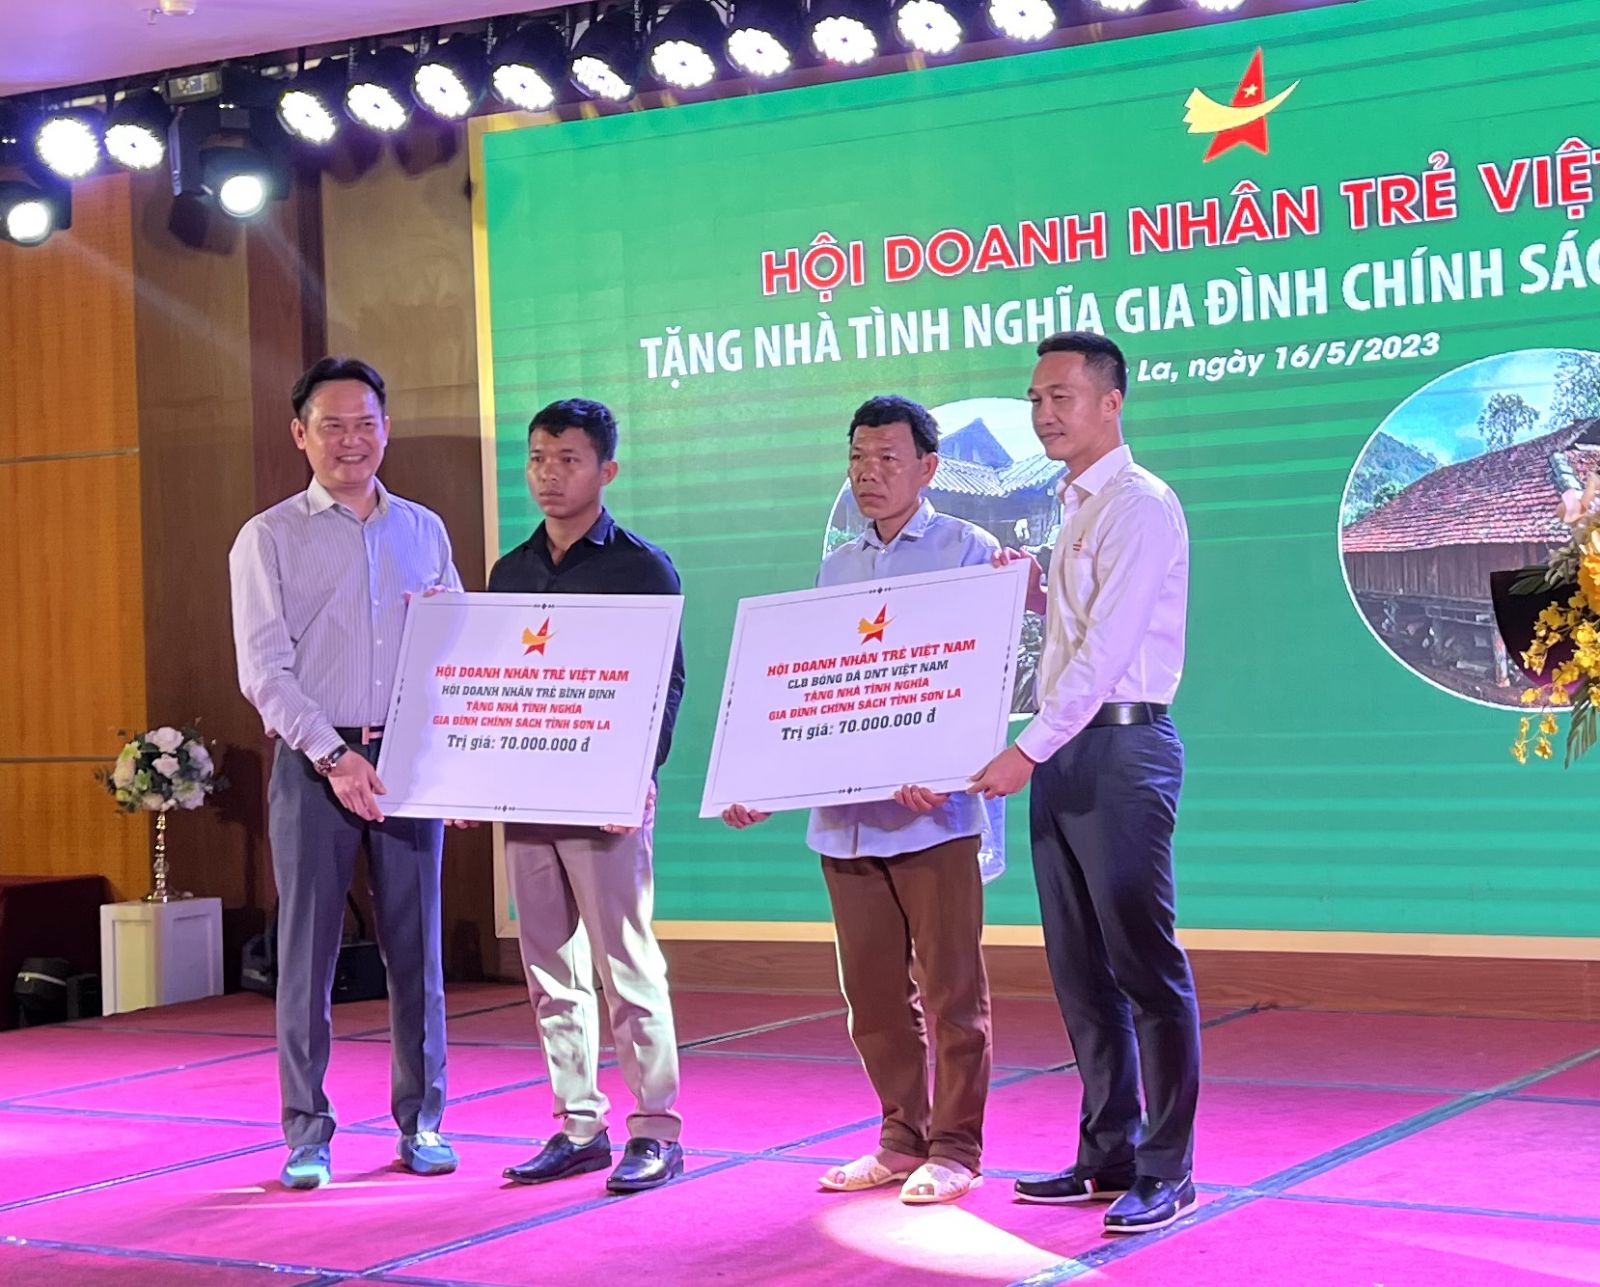 Hội doanh nhân trẻ Việt Nam trao 02 nhà tình nghĩa cho gia đình chính sách tỉnh Sơn La.